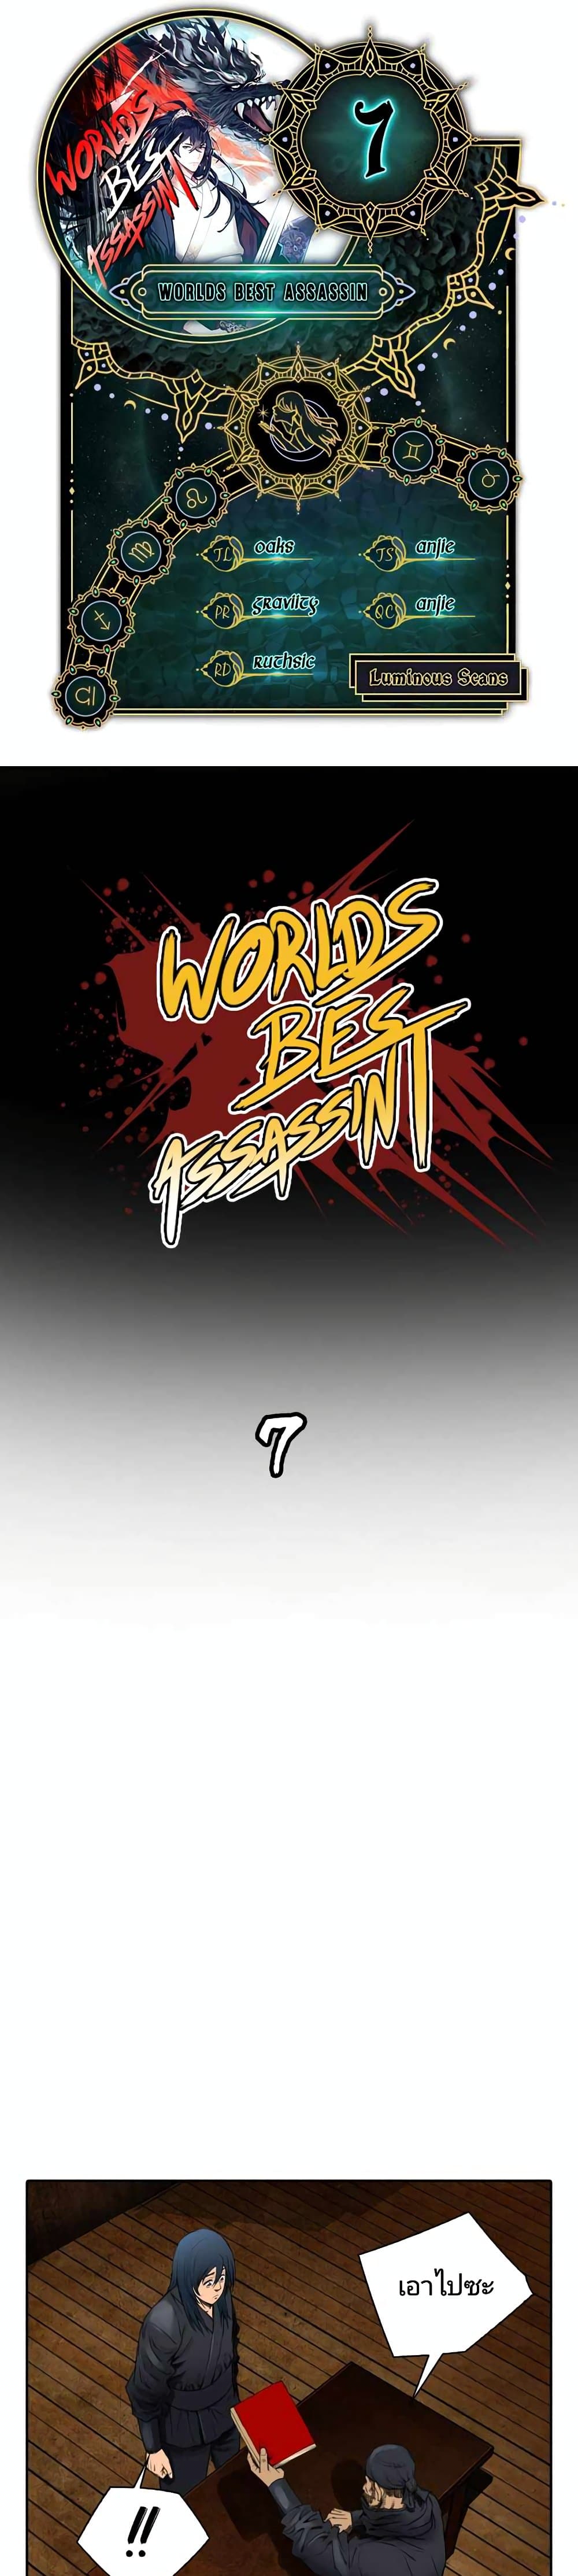 Worlds Best Assassin 7-7